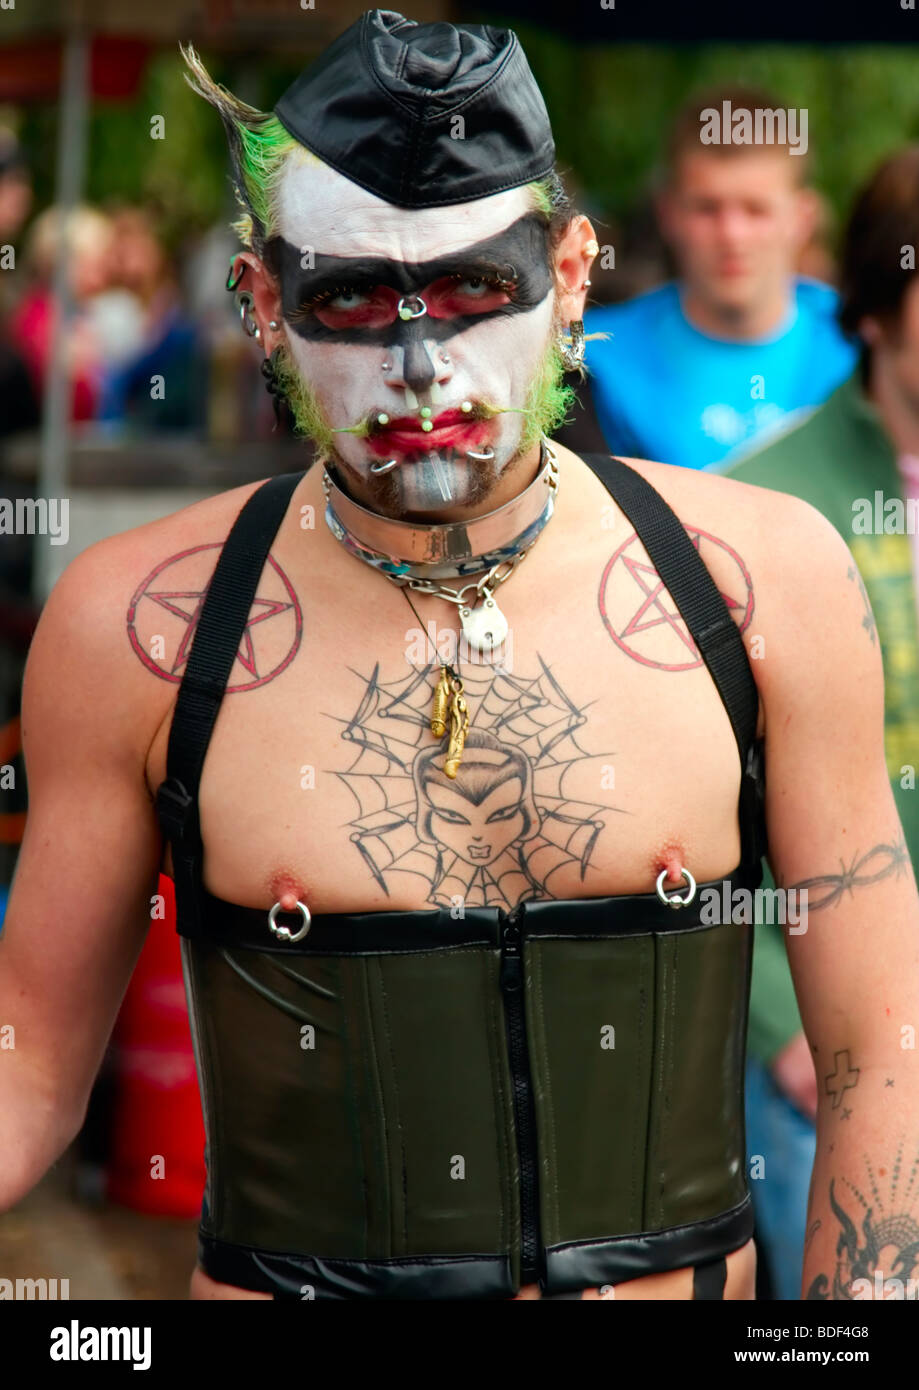 Homme avec piercings et autres body art à Strawberry Fair, Cambridge, juin 2009. Banque D'Images